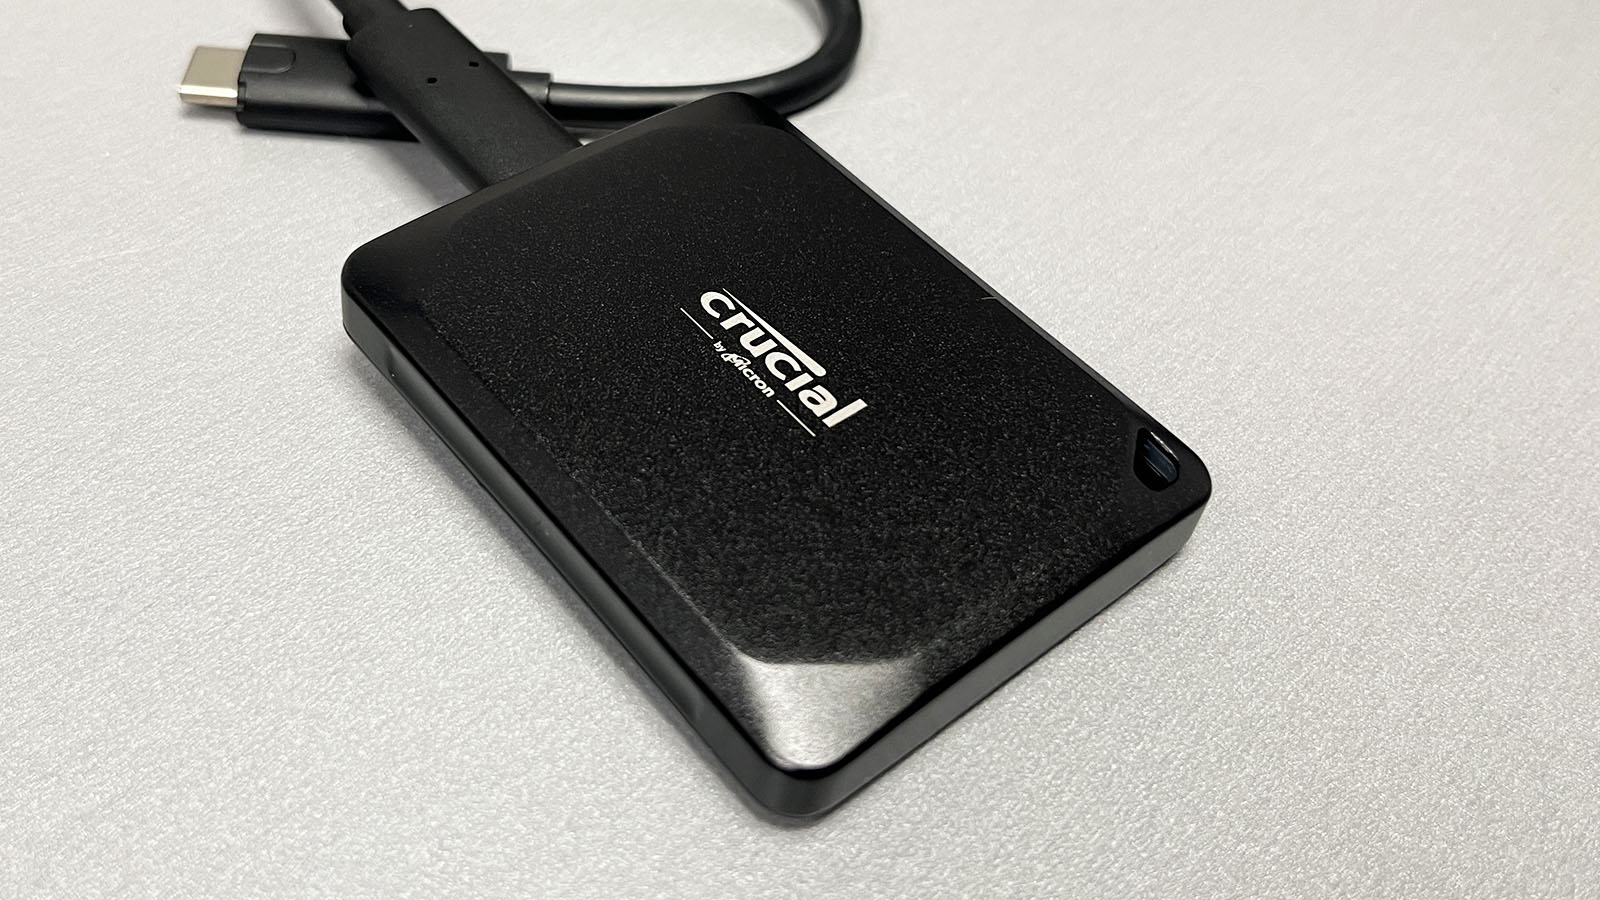 Crucial X10 Pro 2TB External SSD